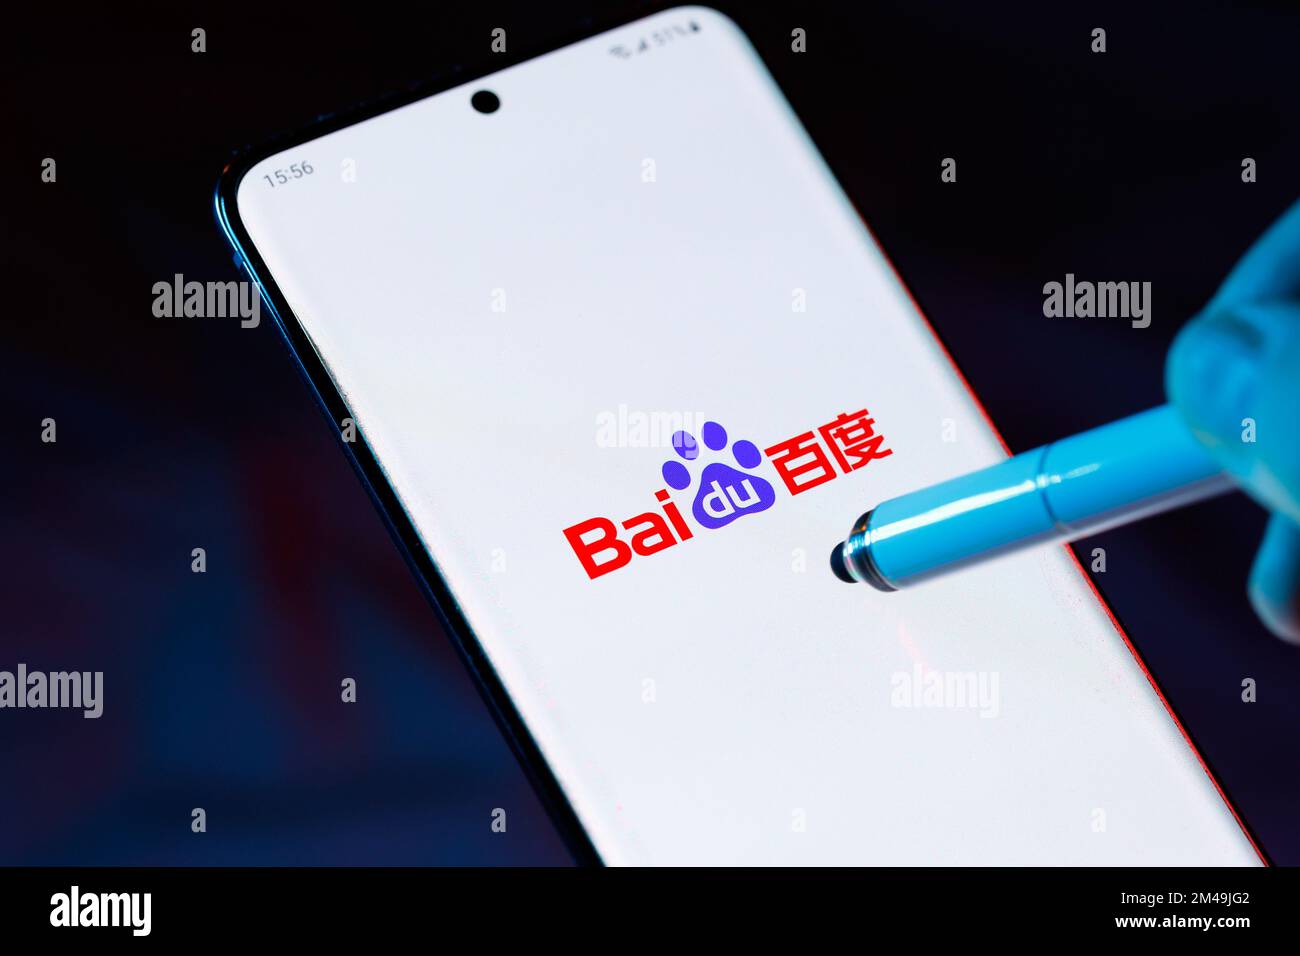 Logo di Baidu 百度 su uno smartphone con uno stilo rivolto verso lo schermo. Baidu è una società cinese di Internet e tecnologia ai. Foto Stock